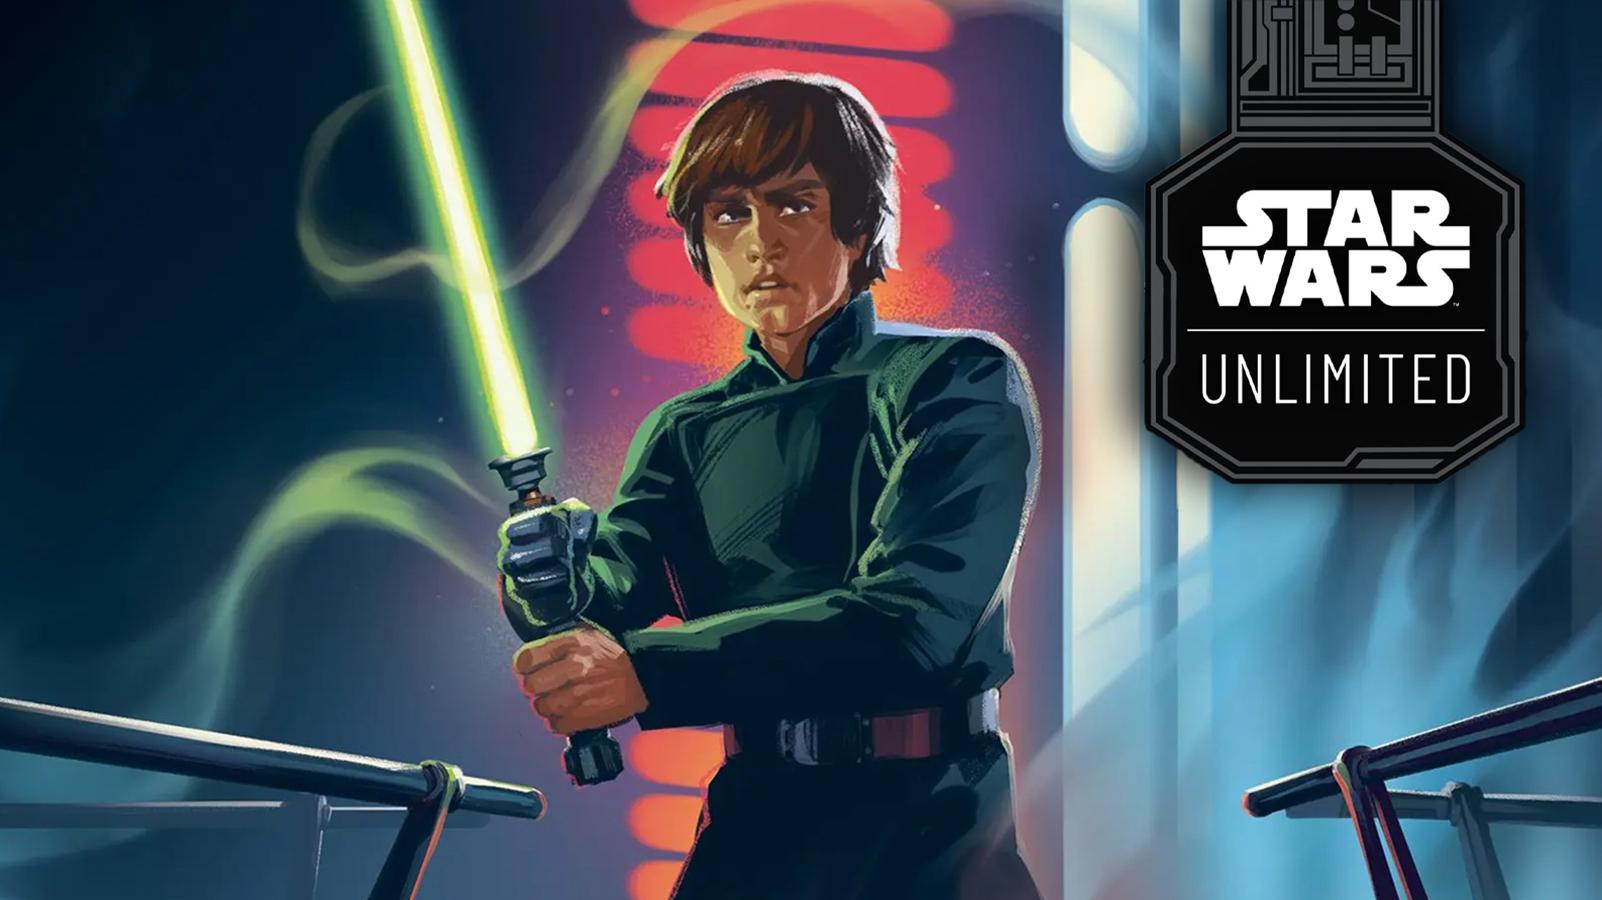 Star Wars Unlimited Luke Skywalker artwork